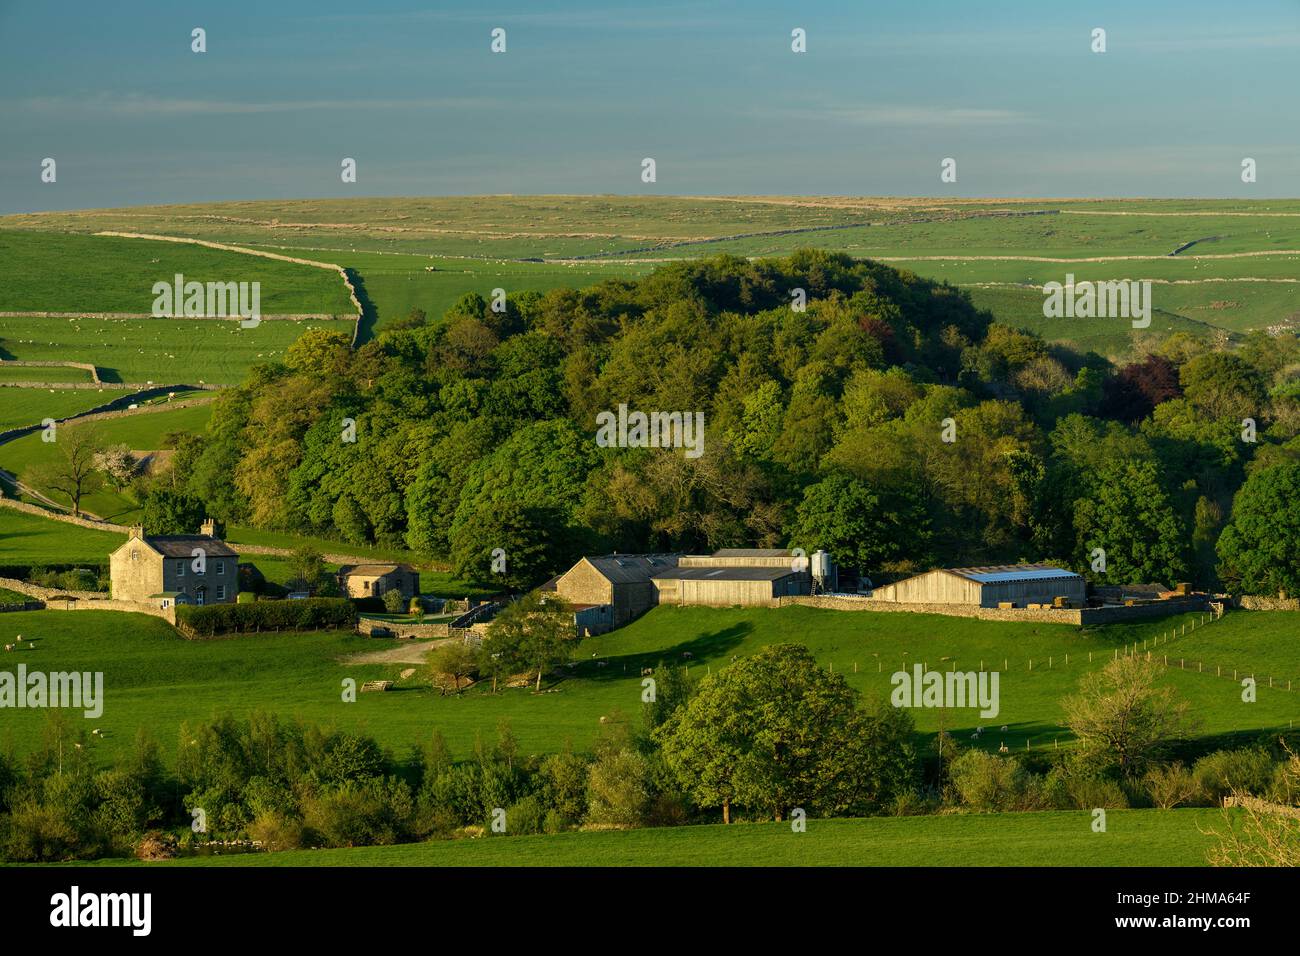 Ancienne ferme et dépendances dans la campagne pittoresque de Yorkshire Dales (collines ondulantes, moutons dans les champs, murs en pierre sèche) - Burnsall, Angleterre. Banque D'Images